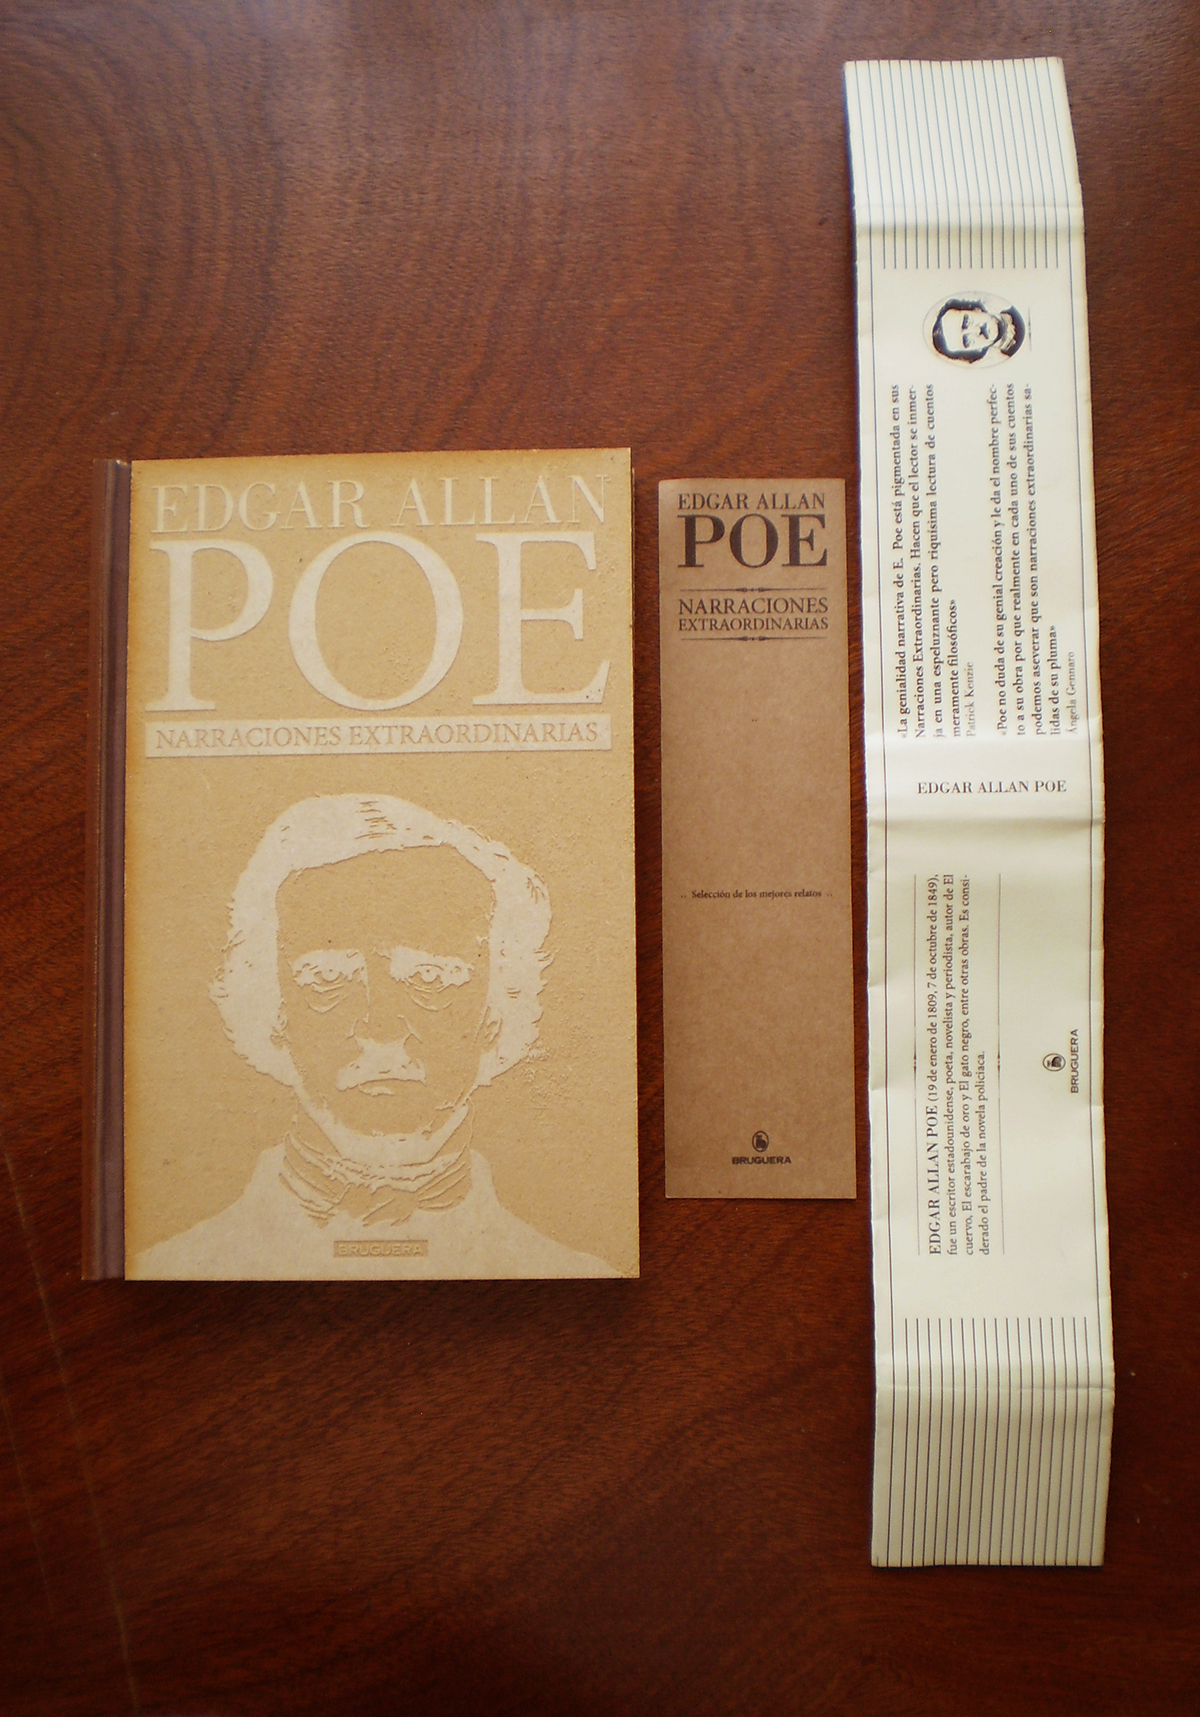 Poe Edgar Allan Poe book libro deluxe edition edicion de lujo fadu catedra cosgaya cosgaya